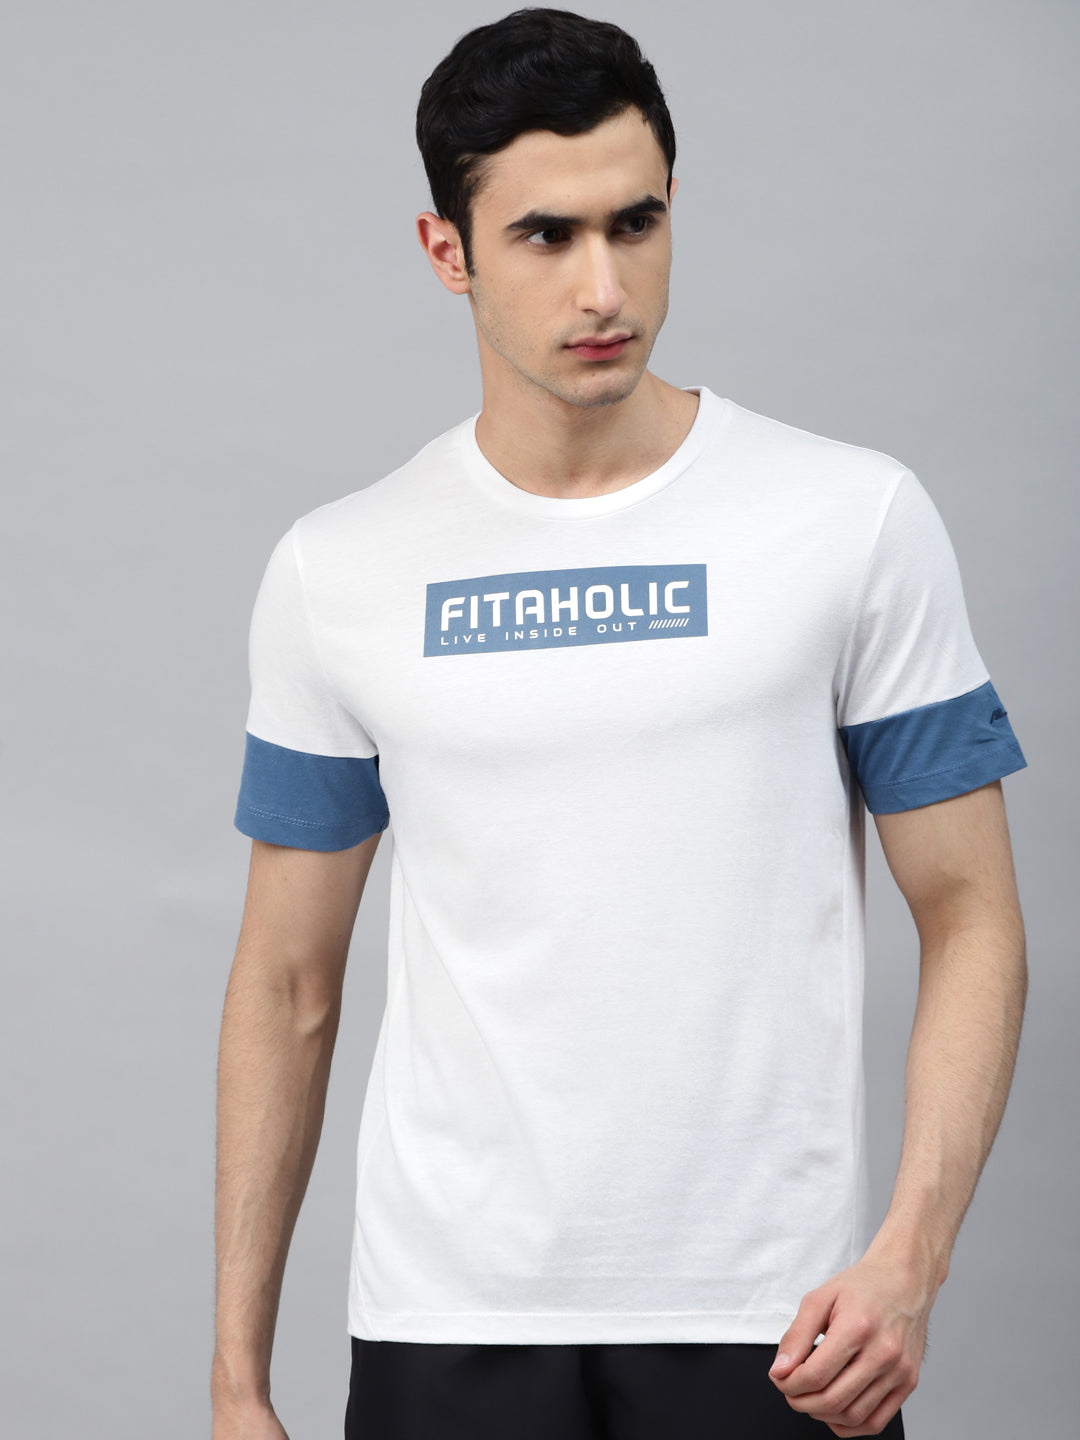 Alcis Men White Printed Round Neck Running T-shirt